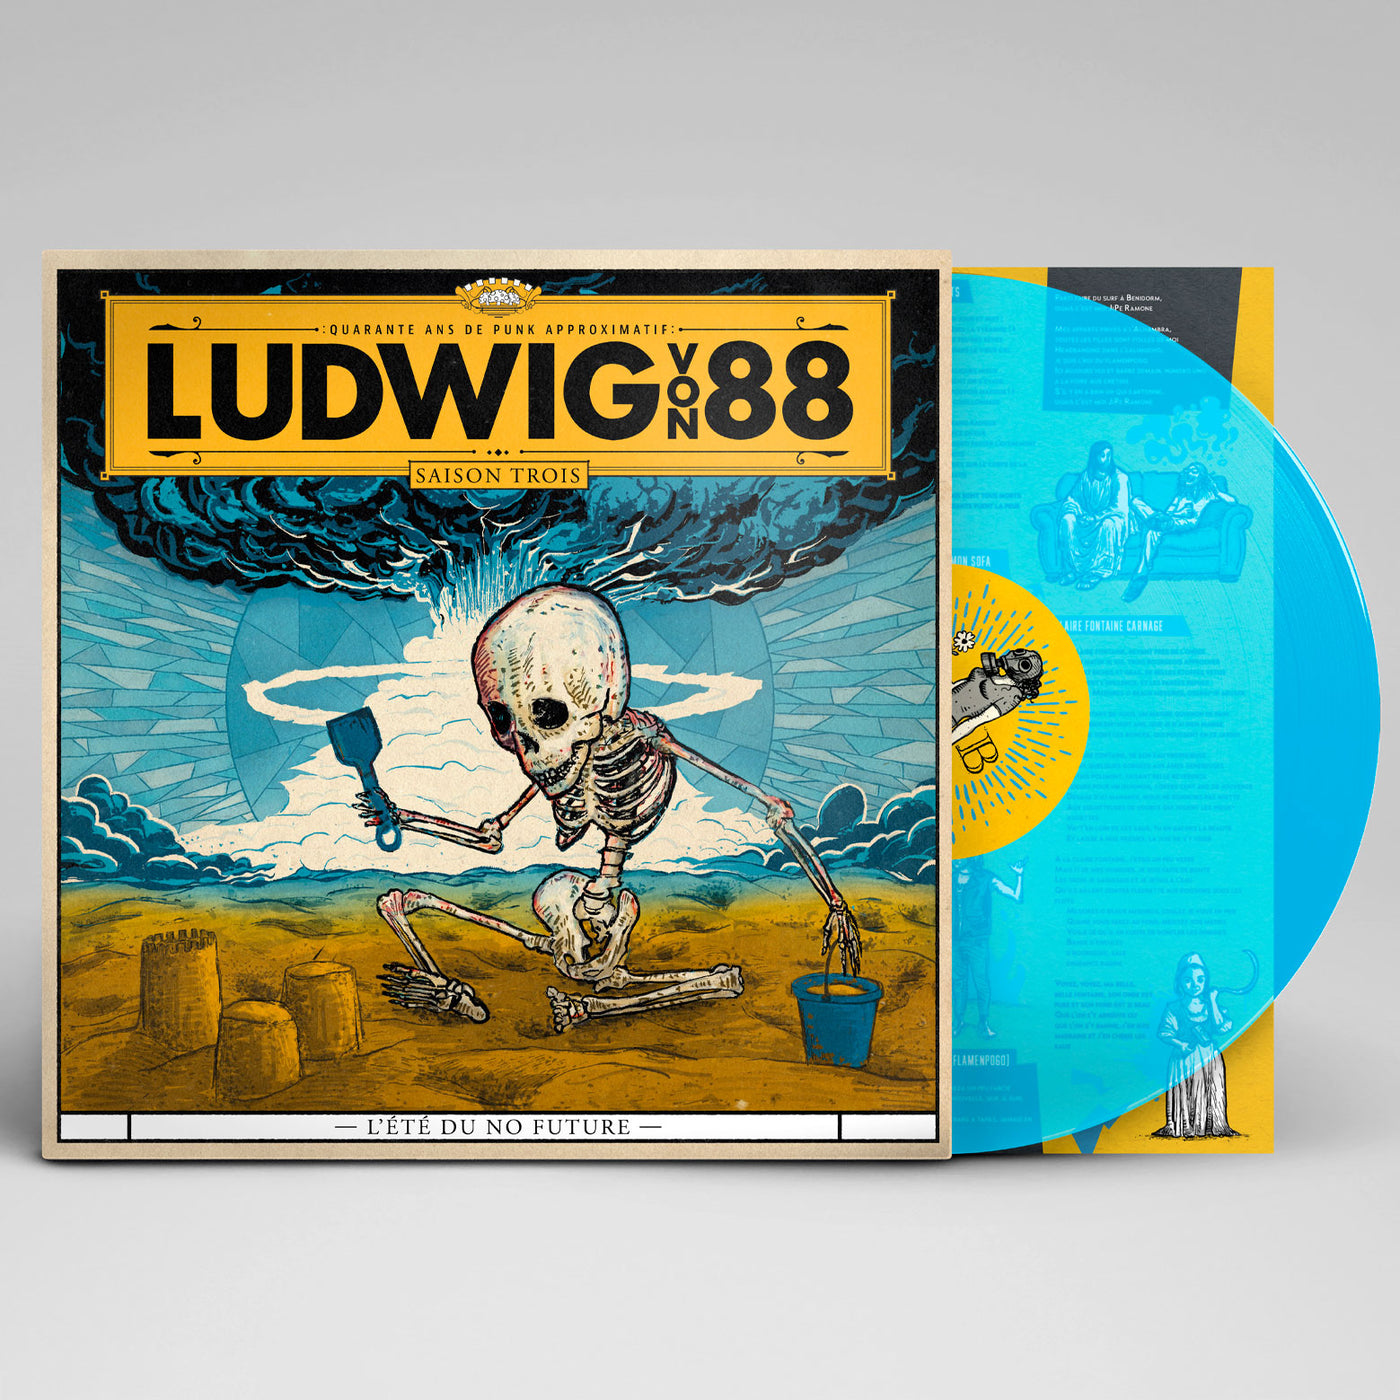 Ludwig Von 88, "L'été du no future", vinyle couleur, sous pochette avec textes et illustrations